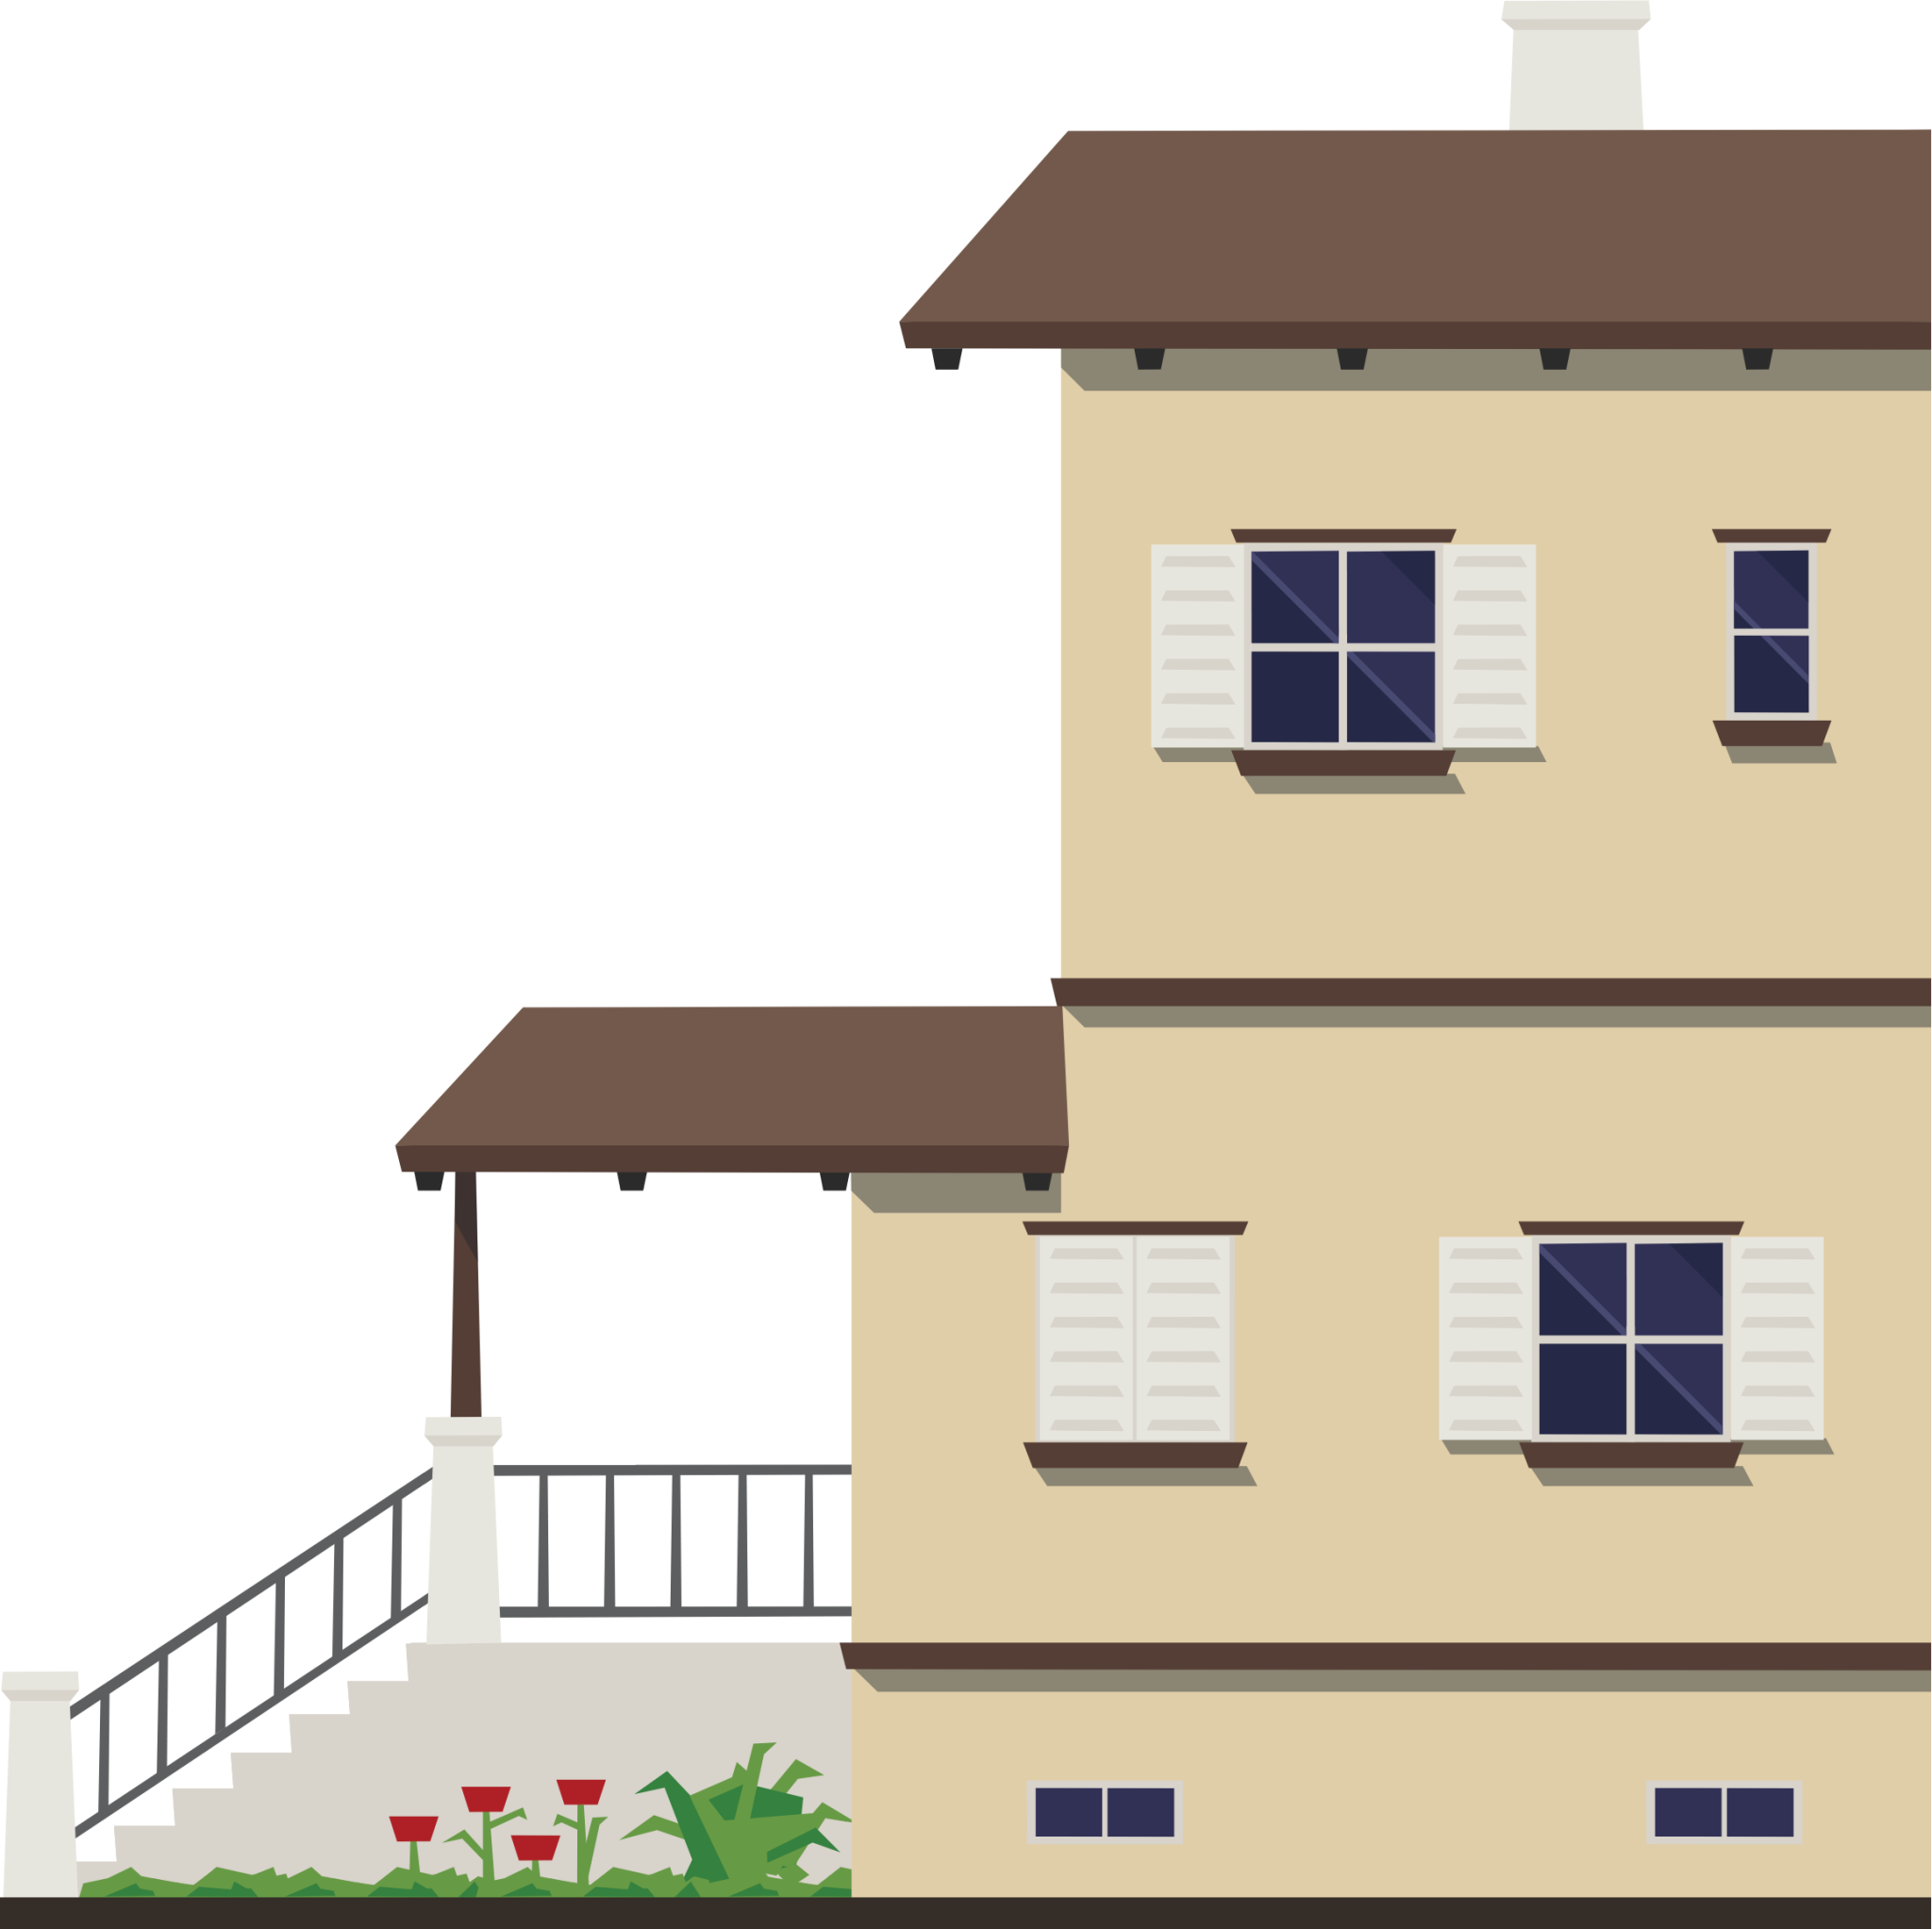 residential right illustration